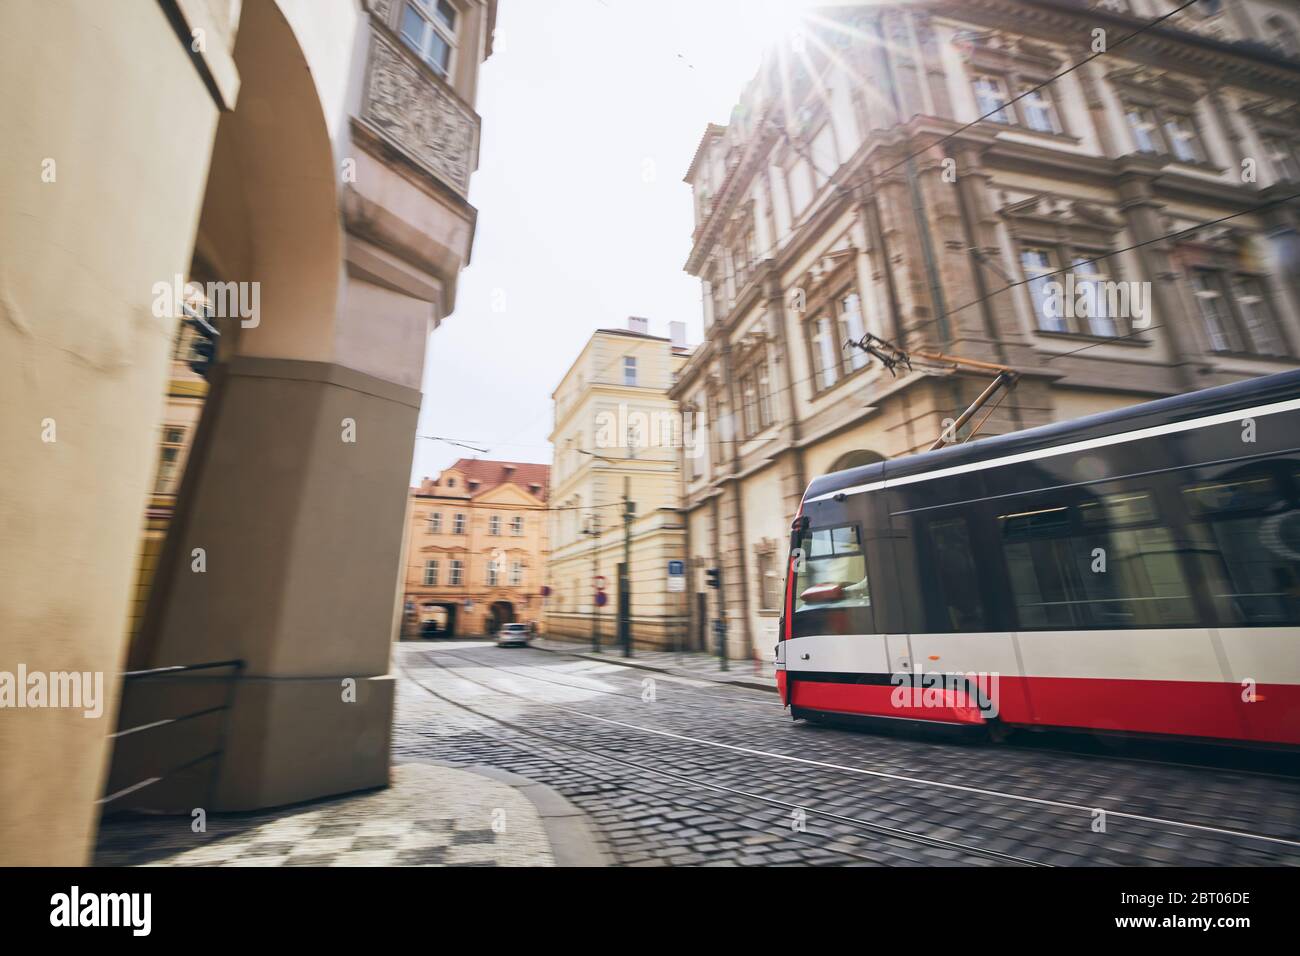 La vie quotidienne en ville. Tramway moderne des transports en commun en mouvement flou. Prague, République tchèque. Banque D'Images